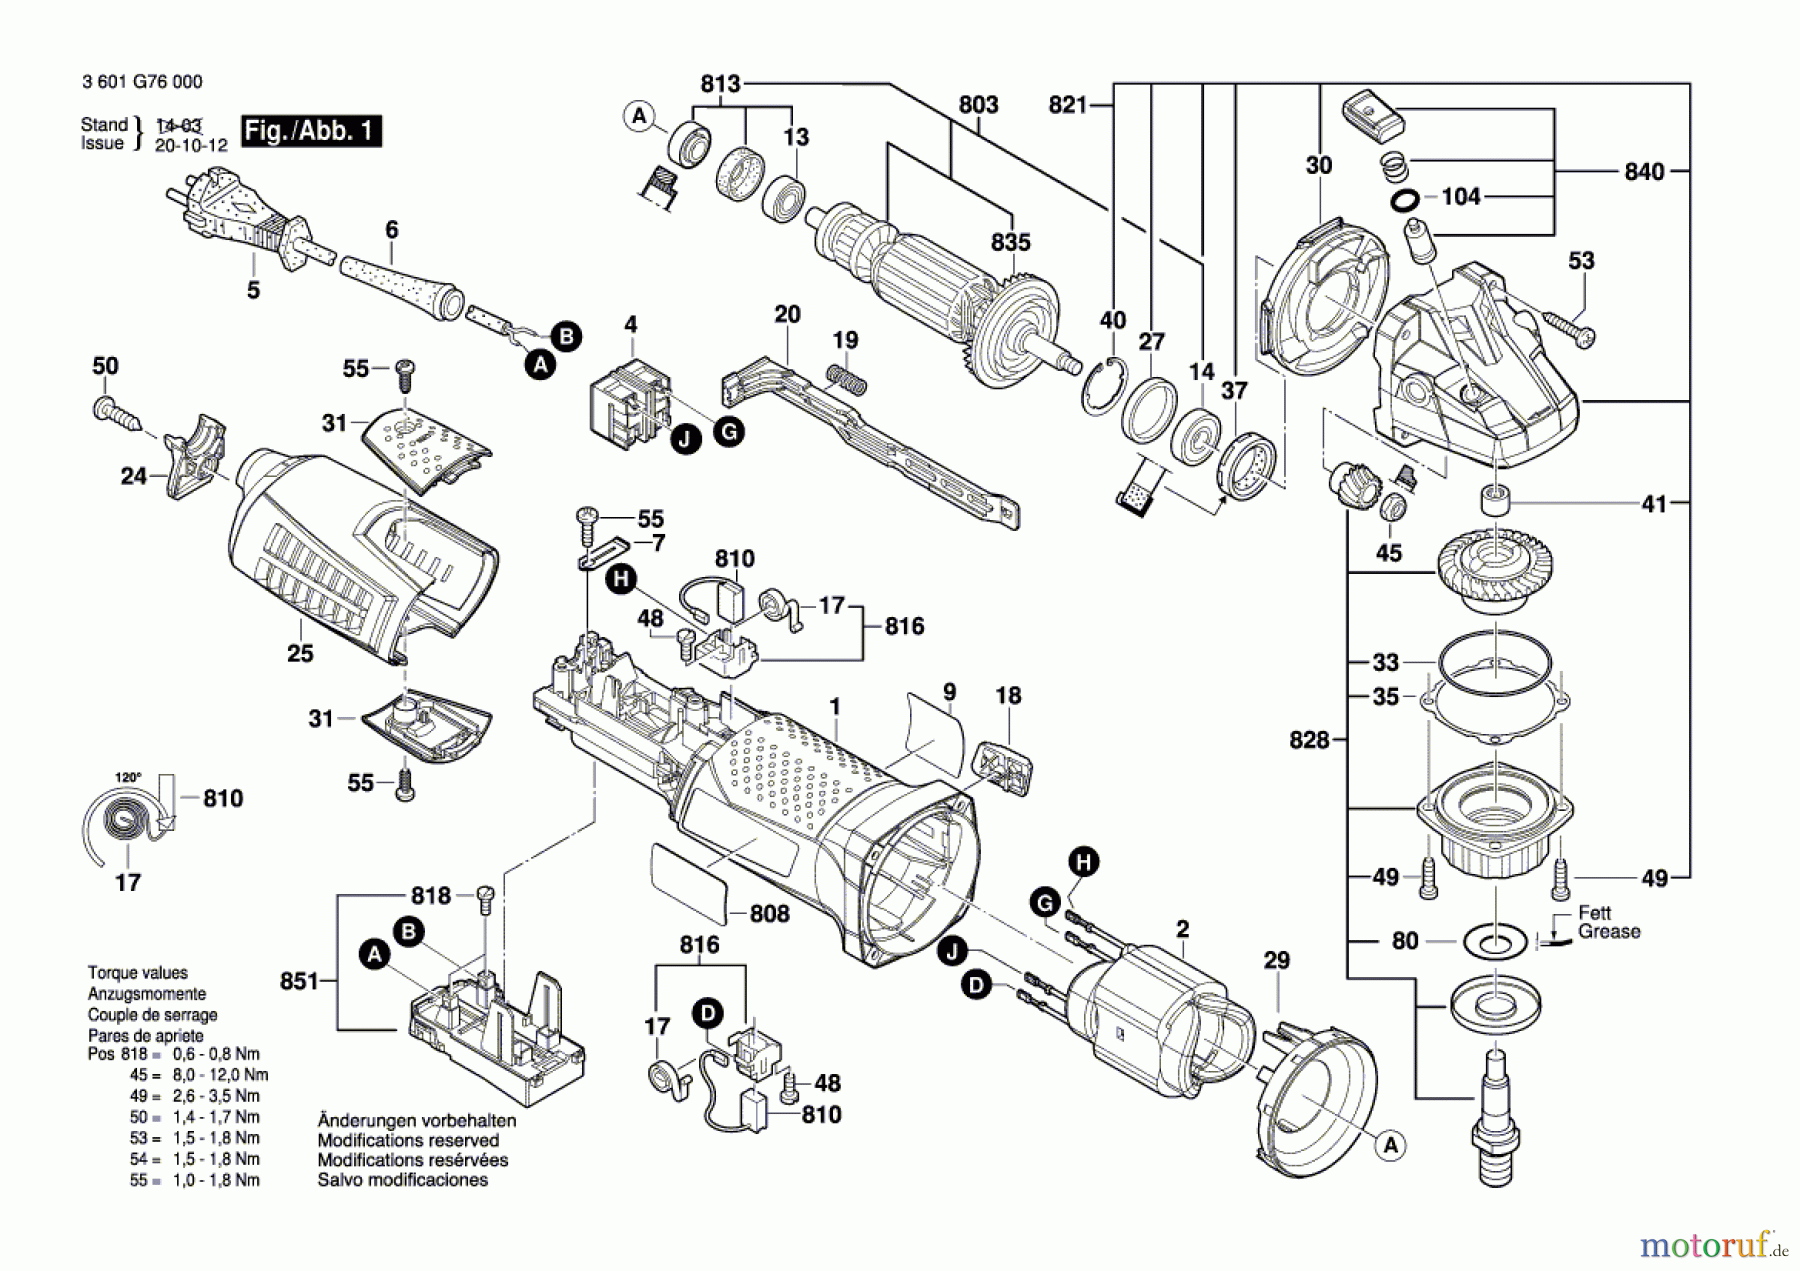  Bosch Werkzeug Betonschleifer GBR 15 CA Seite 1